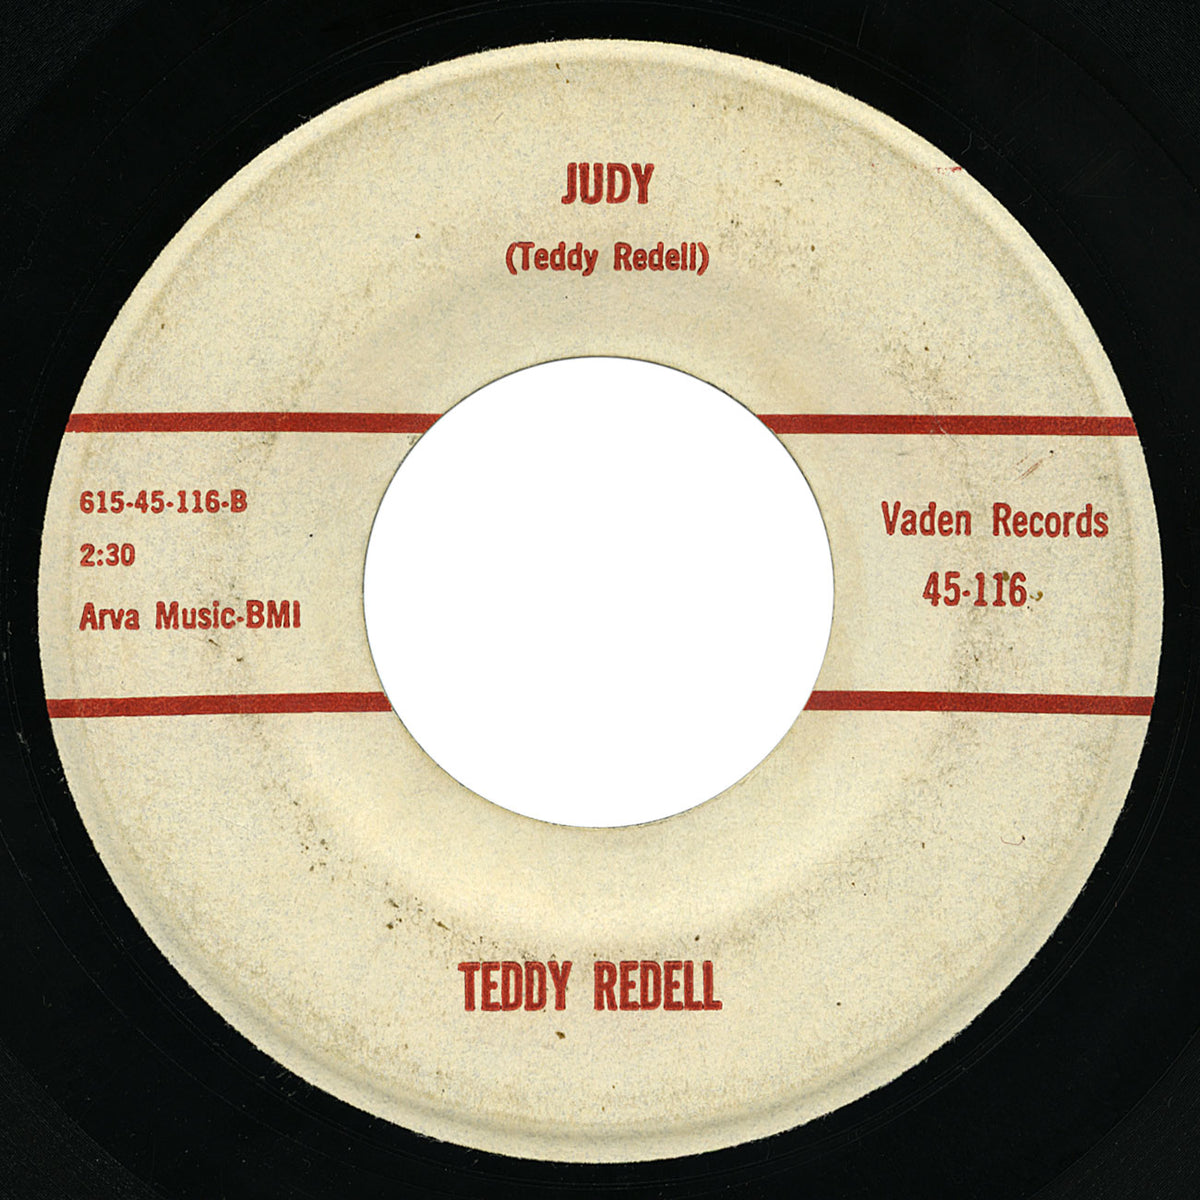 Teddy Redell – Judy – Vaden